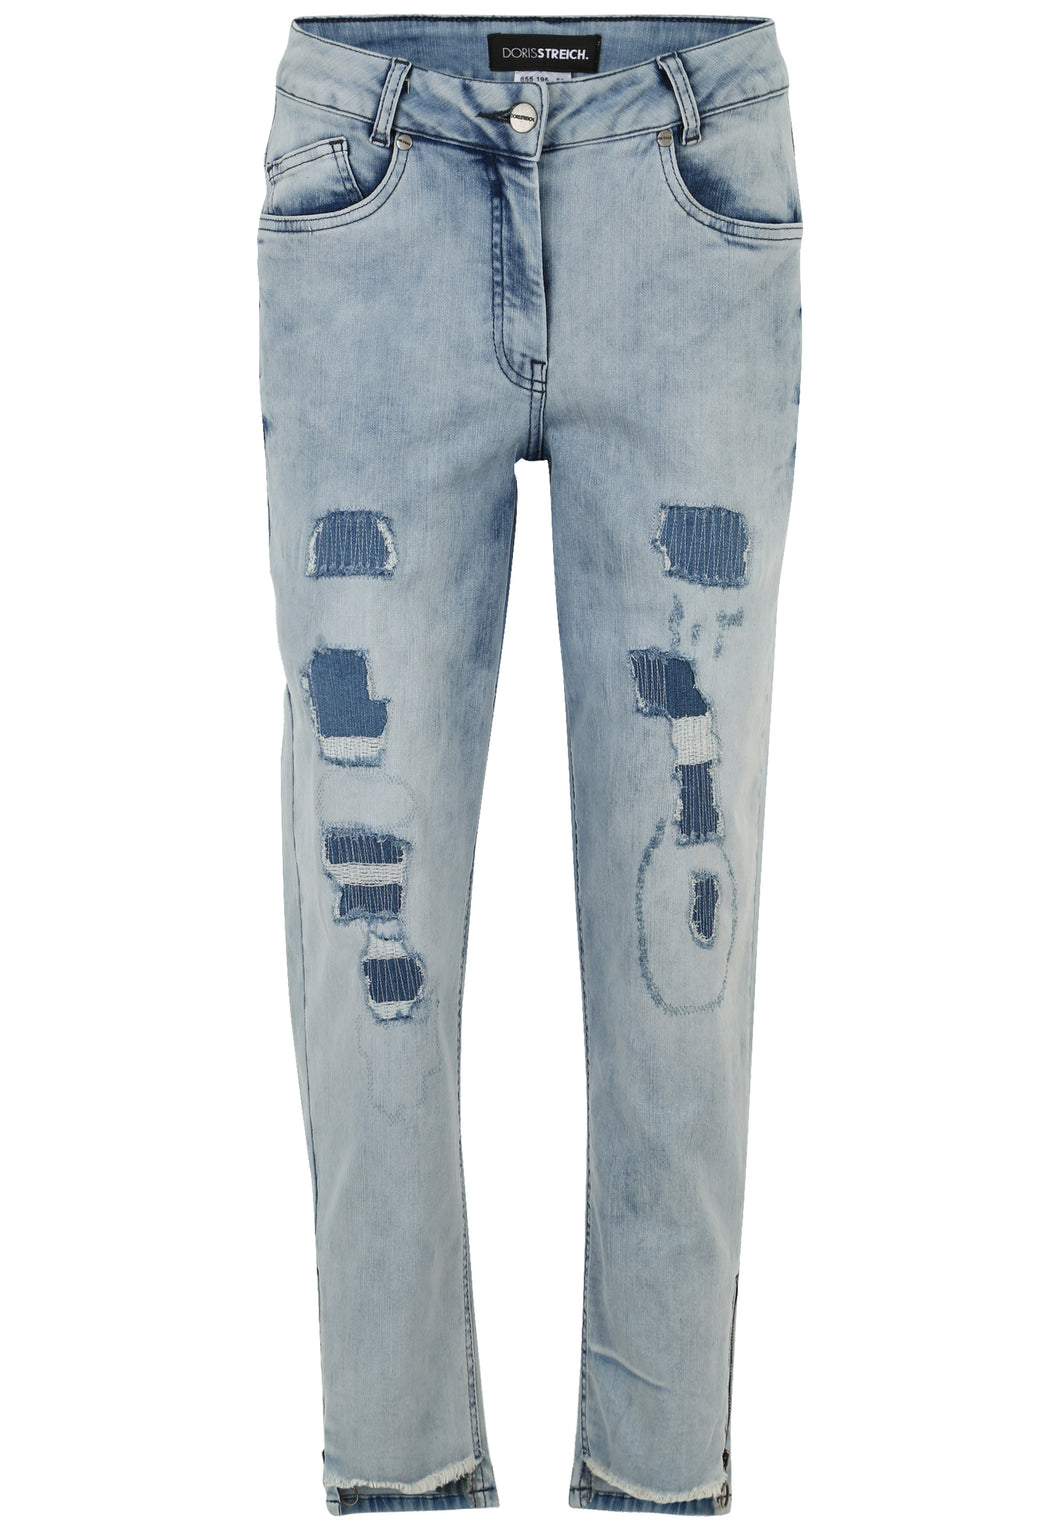 Doris Streich 5-pocket Jeans Hose mit Vintage-Waschung und Reißverschluss Gr 54 56